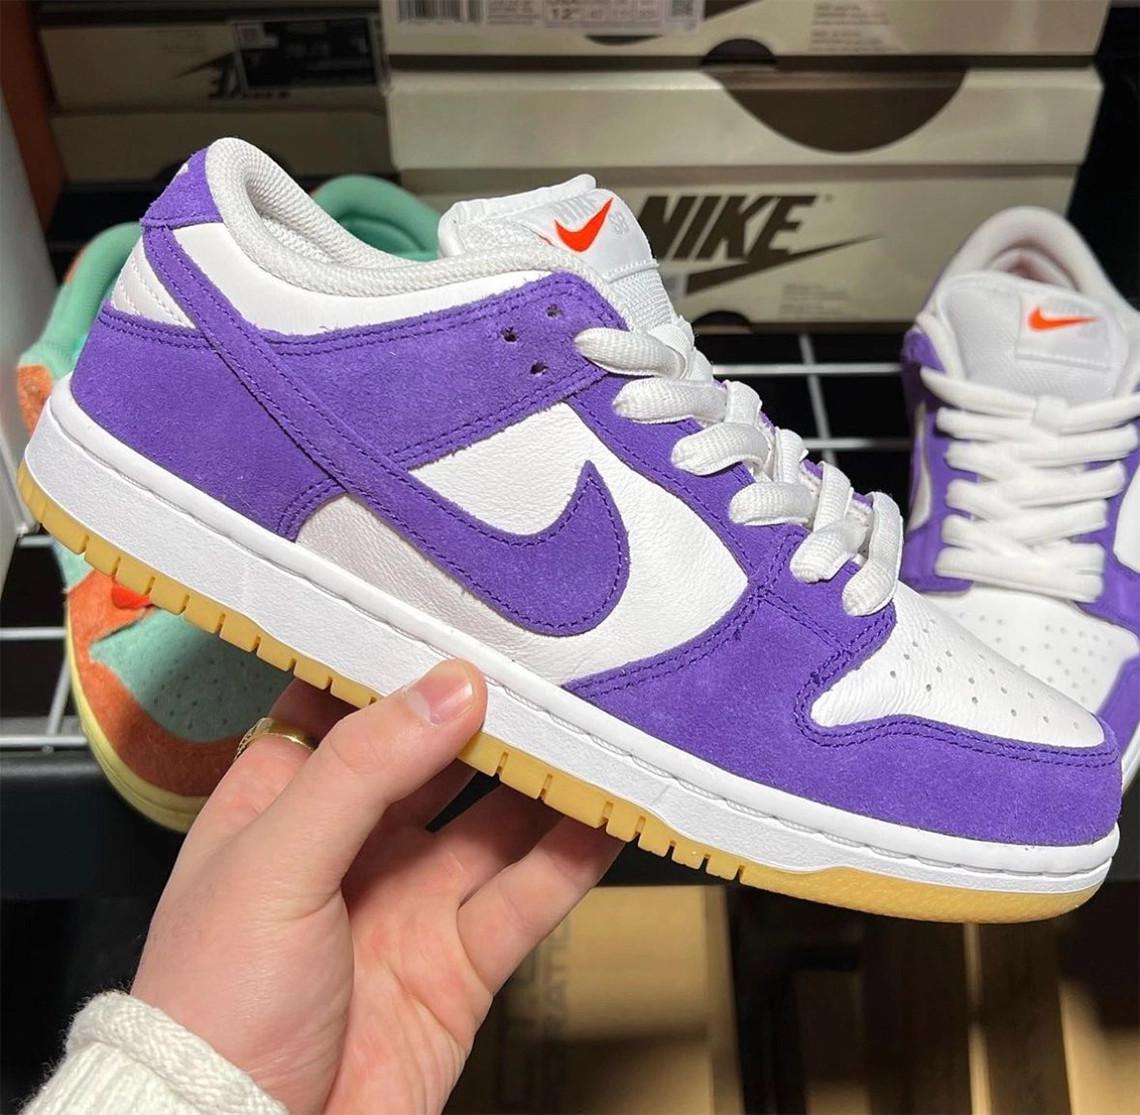 Du suéde violets apparait sur une Nike SB Dunk Low orange label